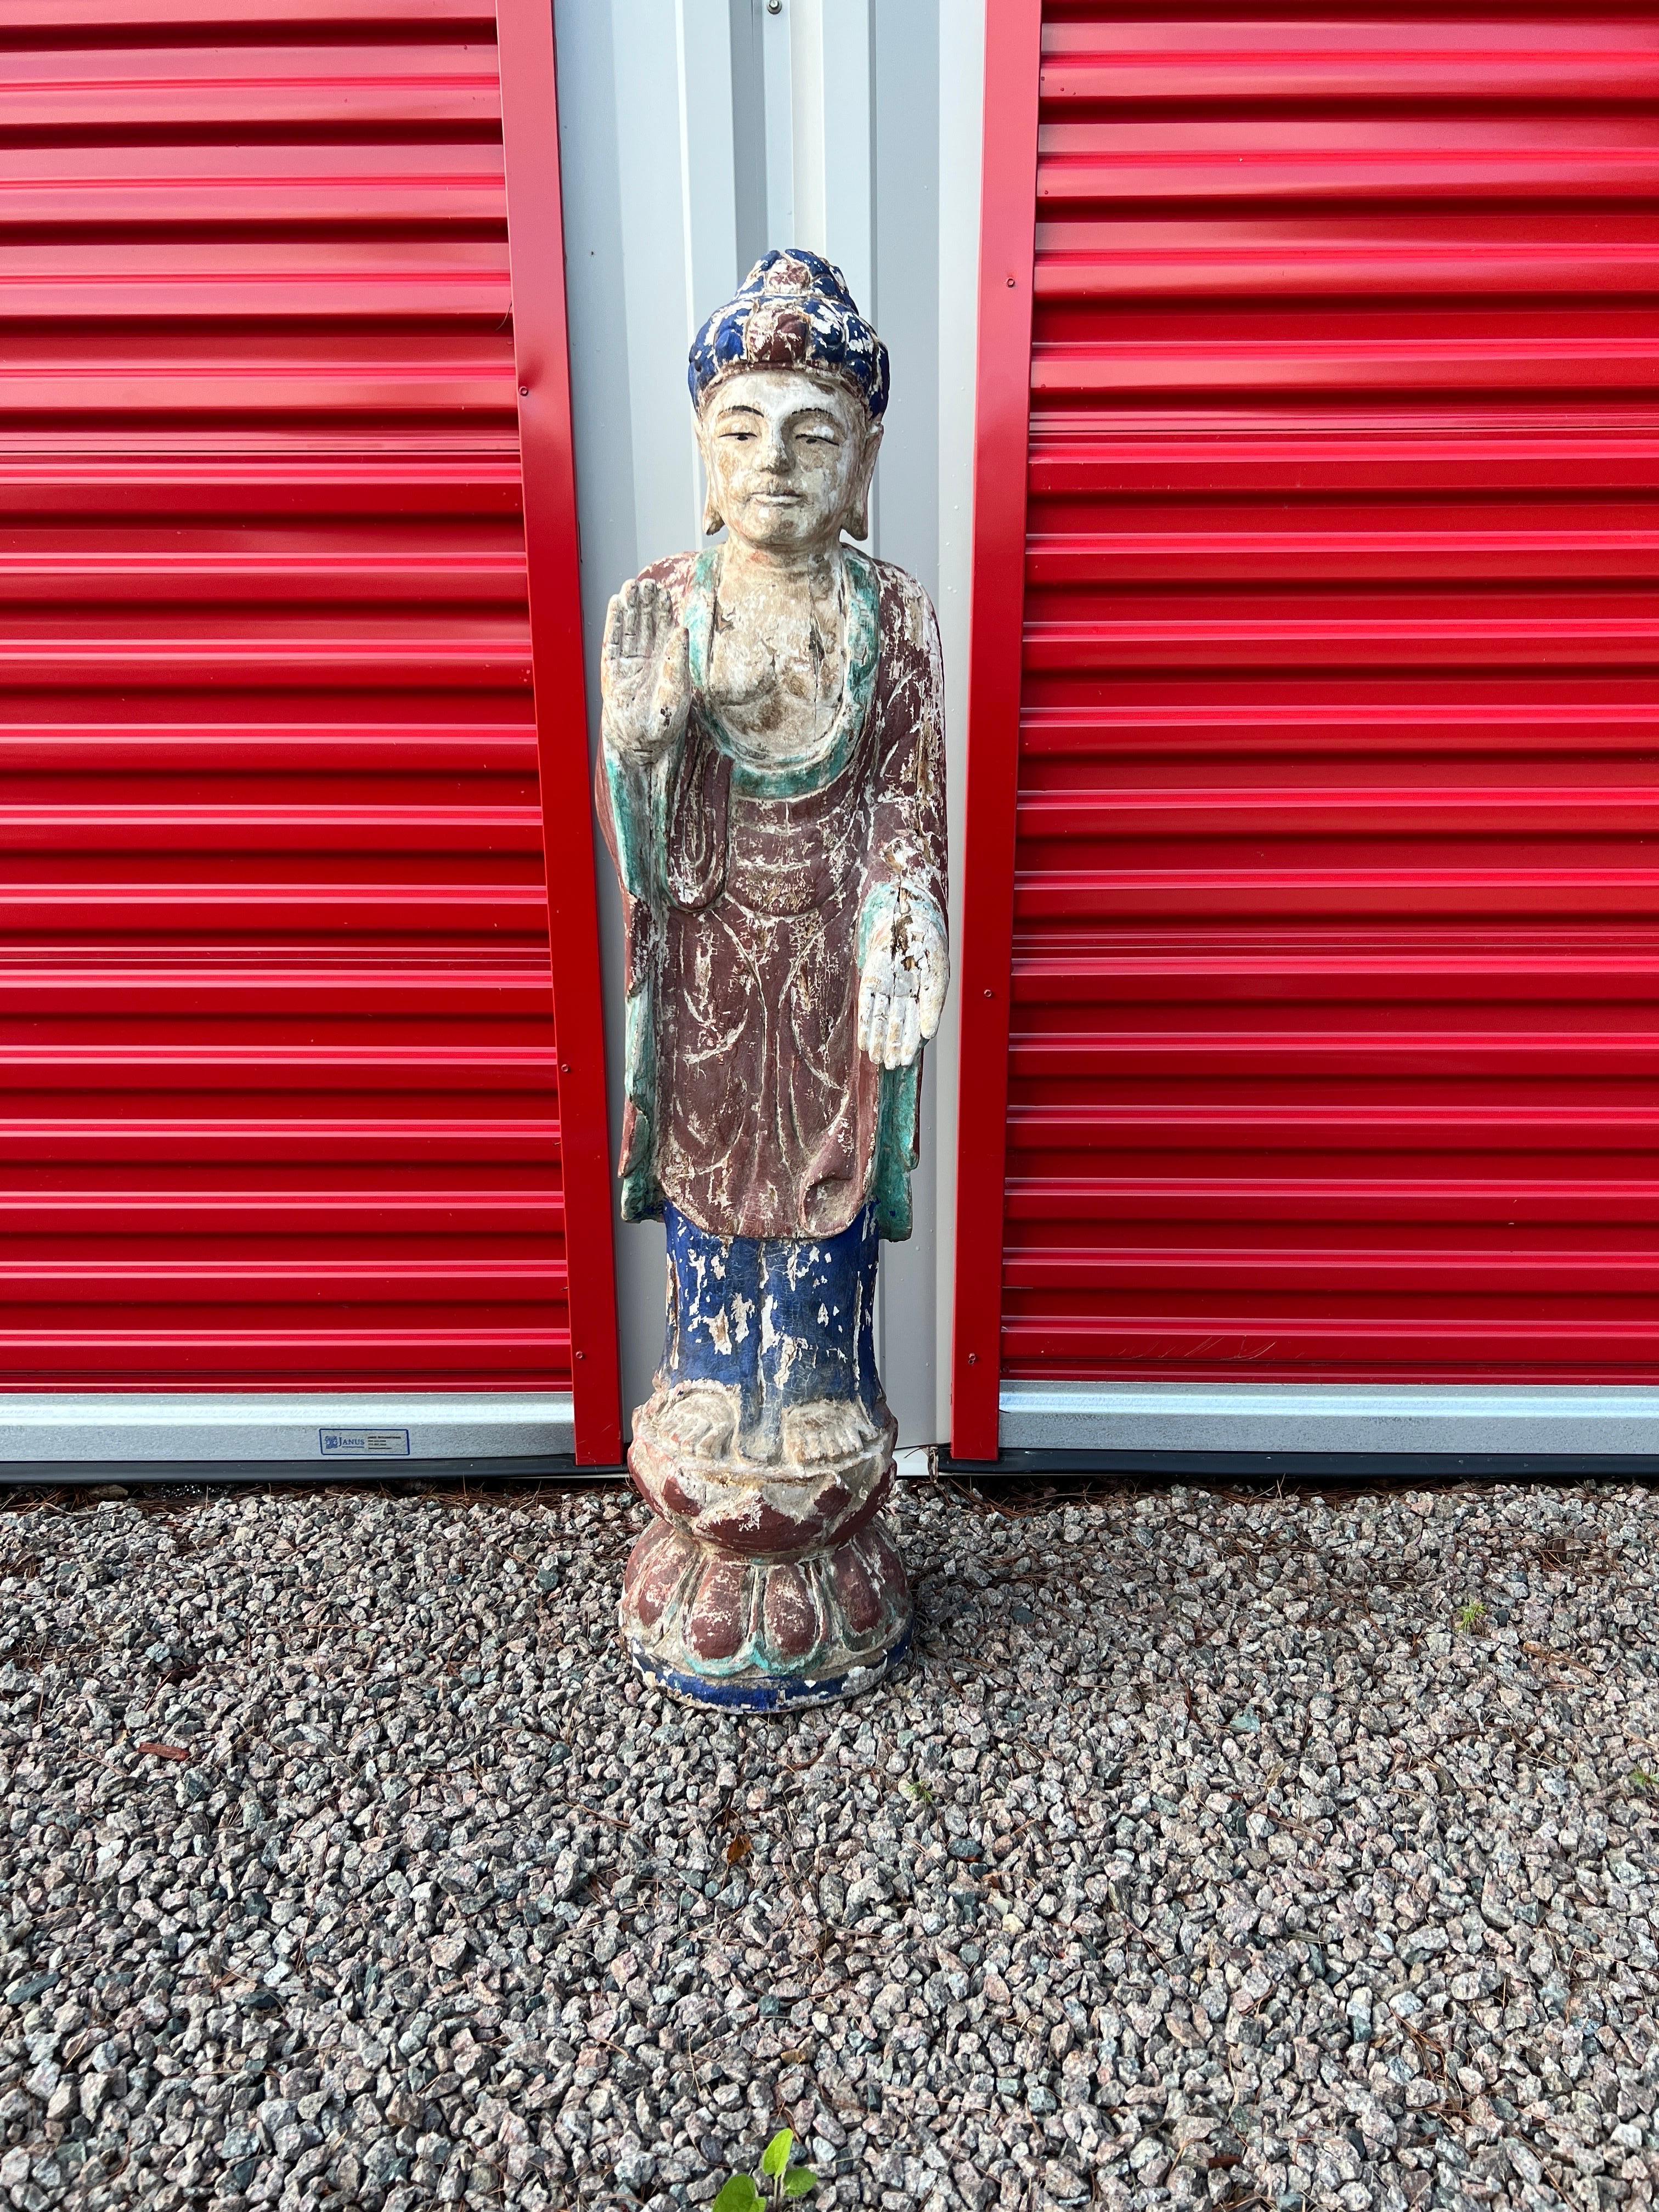 Probablement chinoise, fin du 19e ou début du 20e siècle. 
Cette figure de bouddha sculptée présente des caractéristiques traditionnelles, notamment des oreilles allongées, des robes drapées, un support en forme de fleur de lotus et des mains